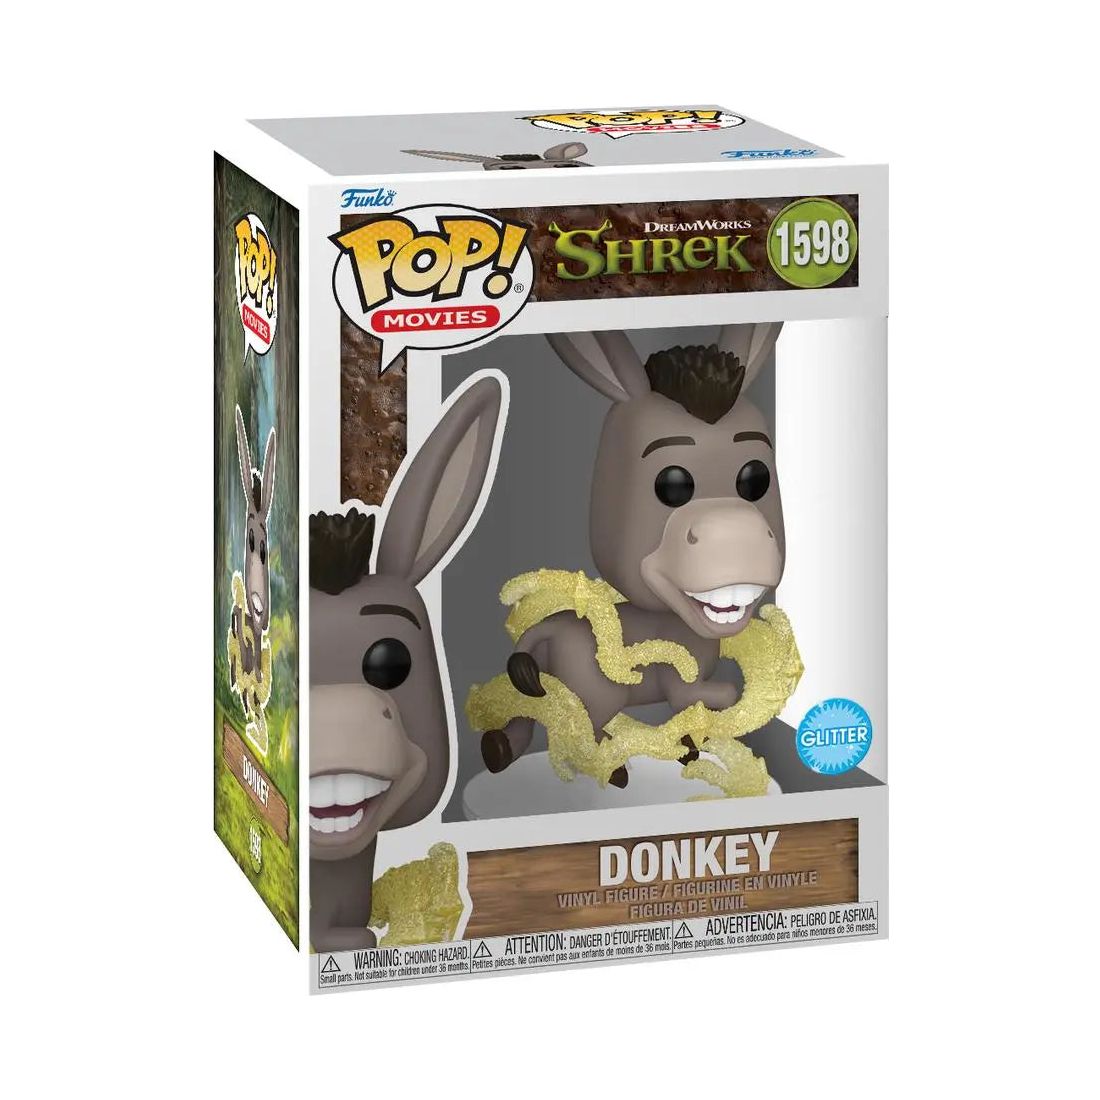 Funko Pop! Movies Shrek 1598 Donkey Funko